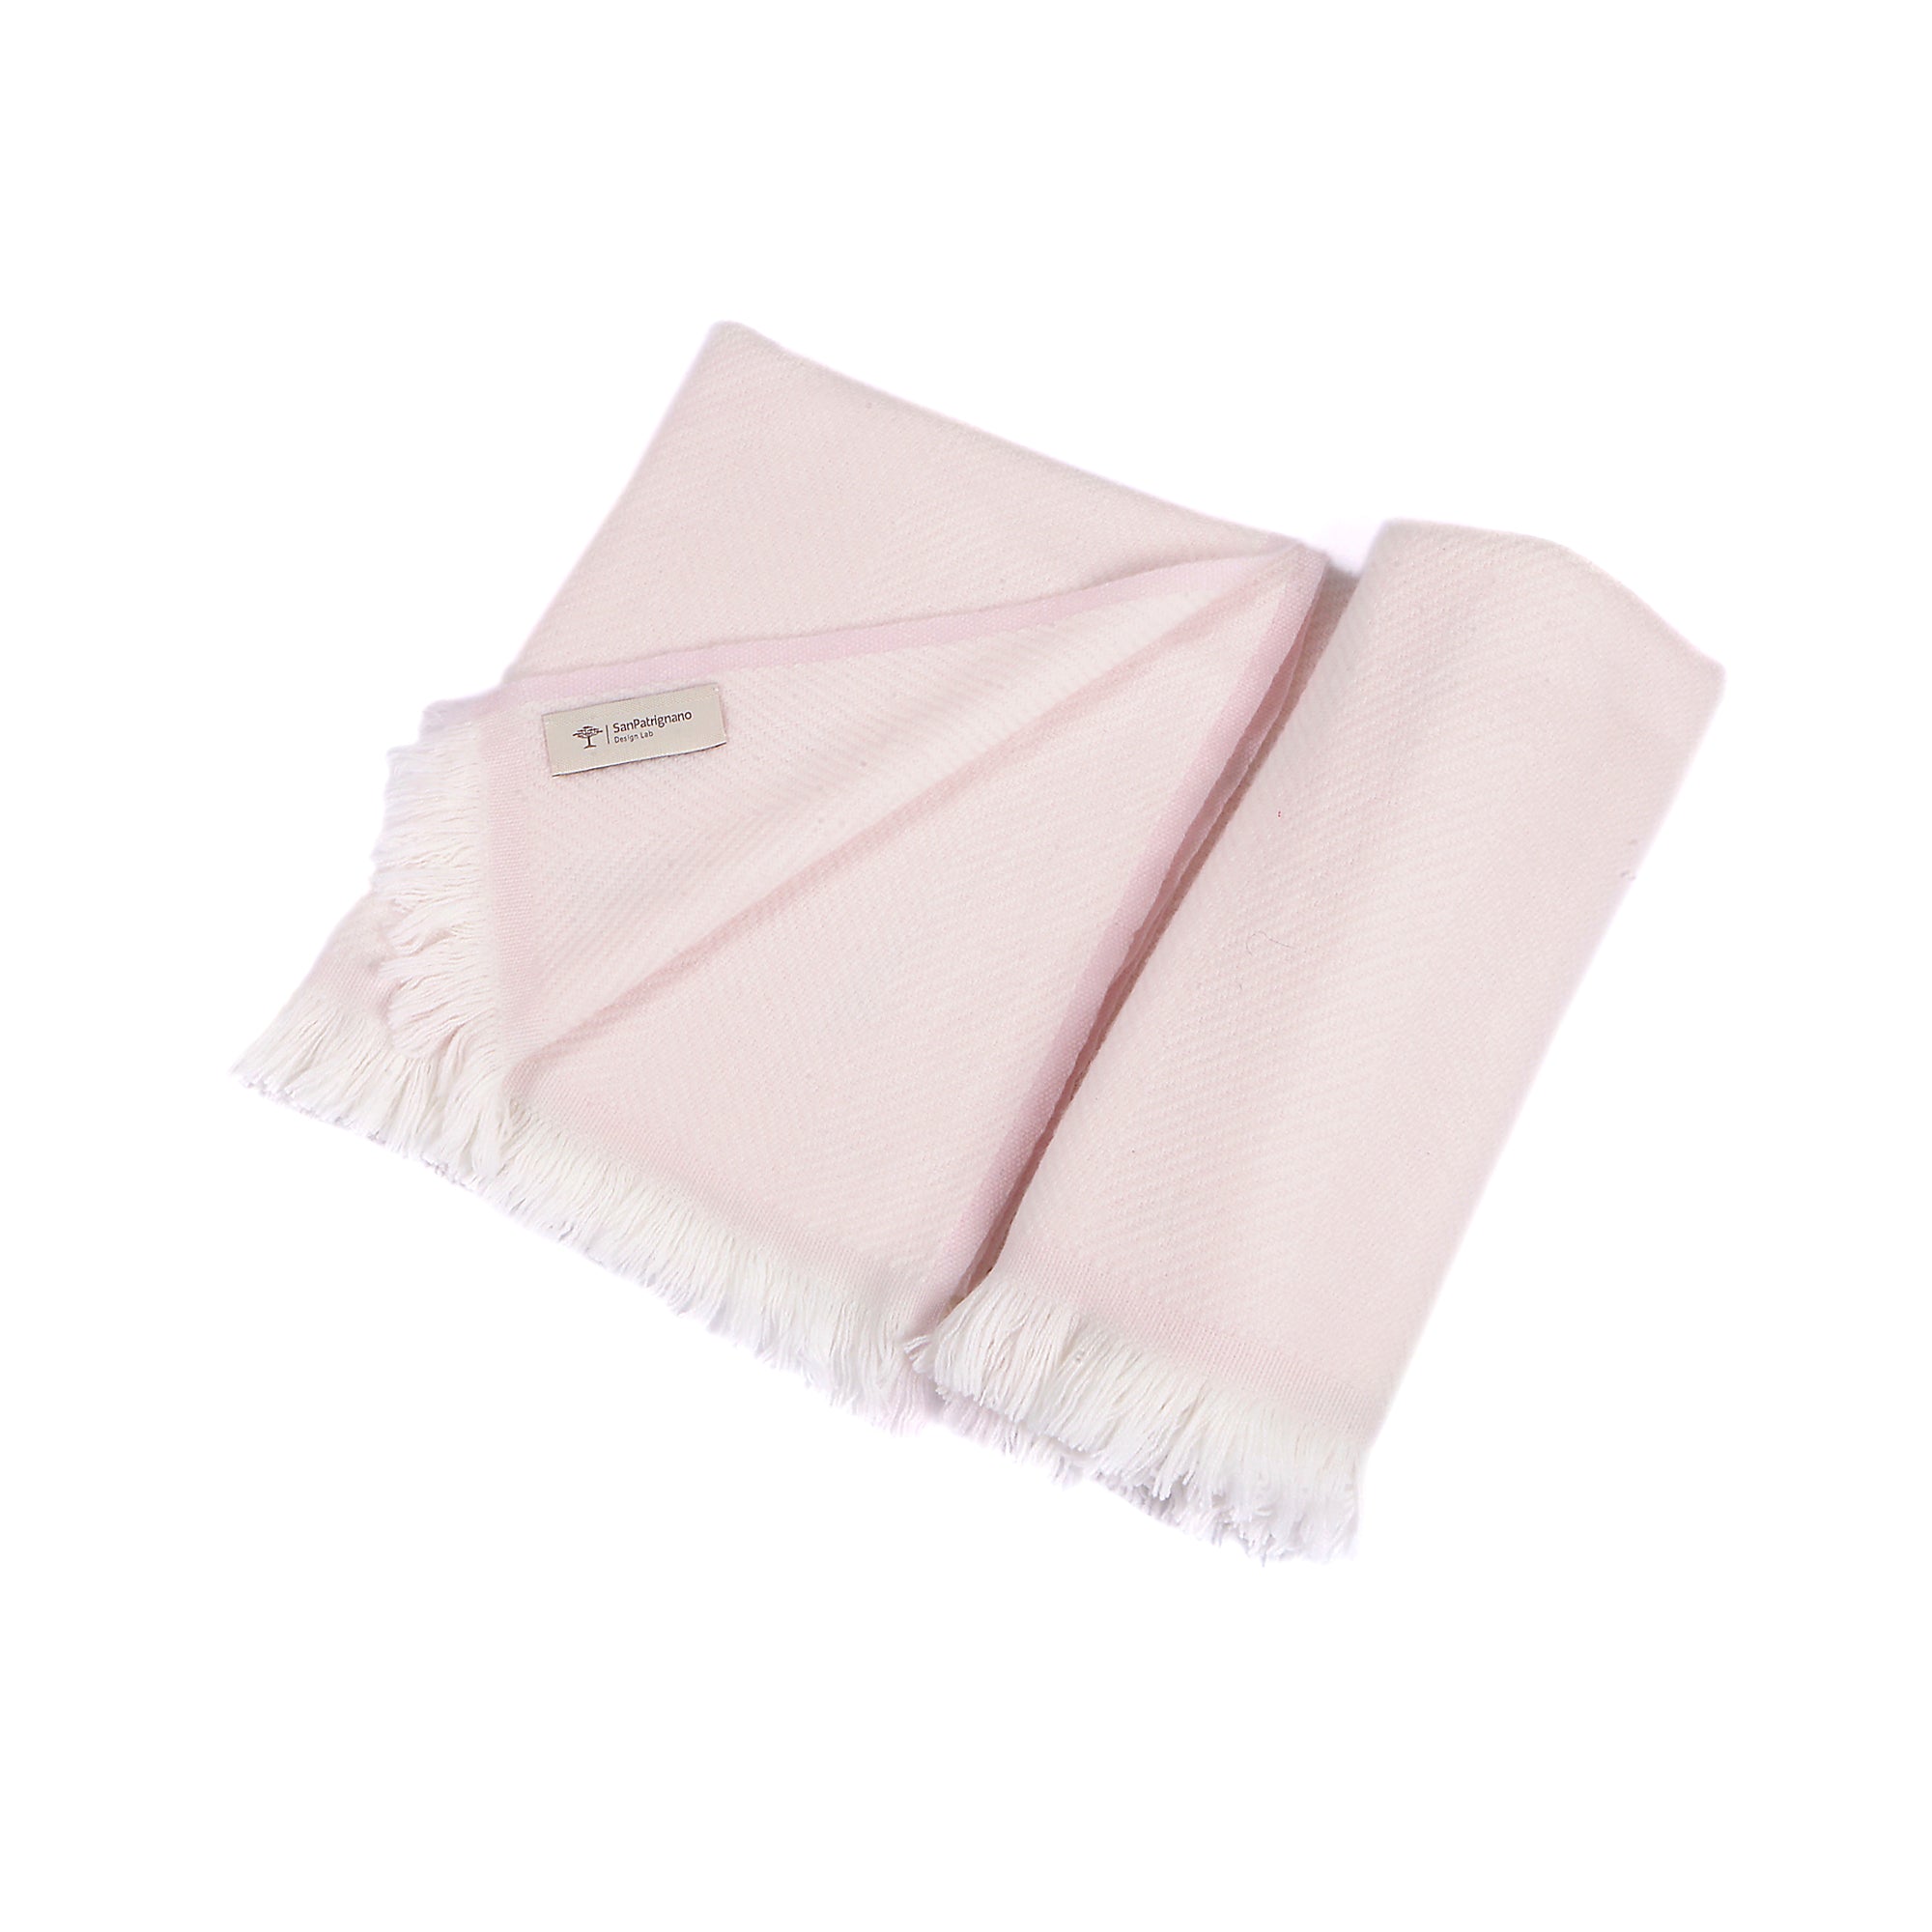 Manta de bebé 100% cachemira en color crema y rosa suave con flecos cortos - Vista alternativa 1